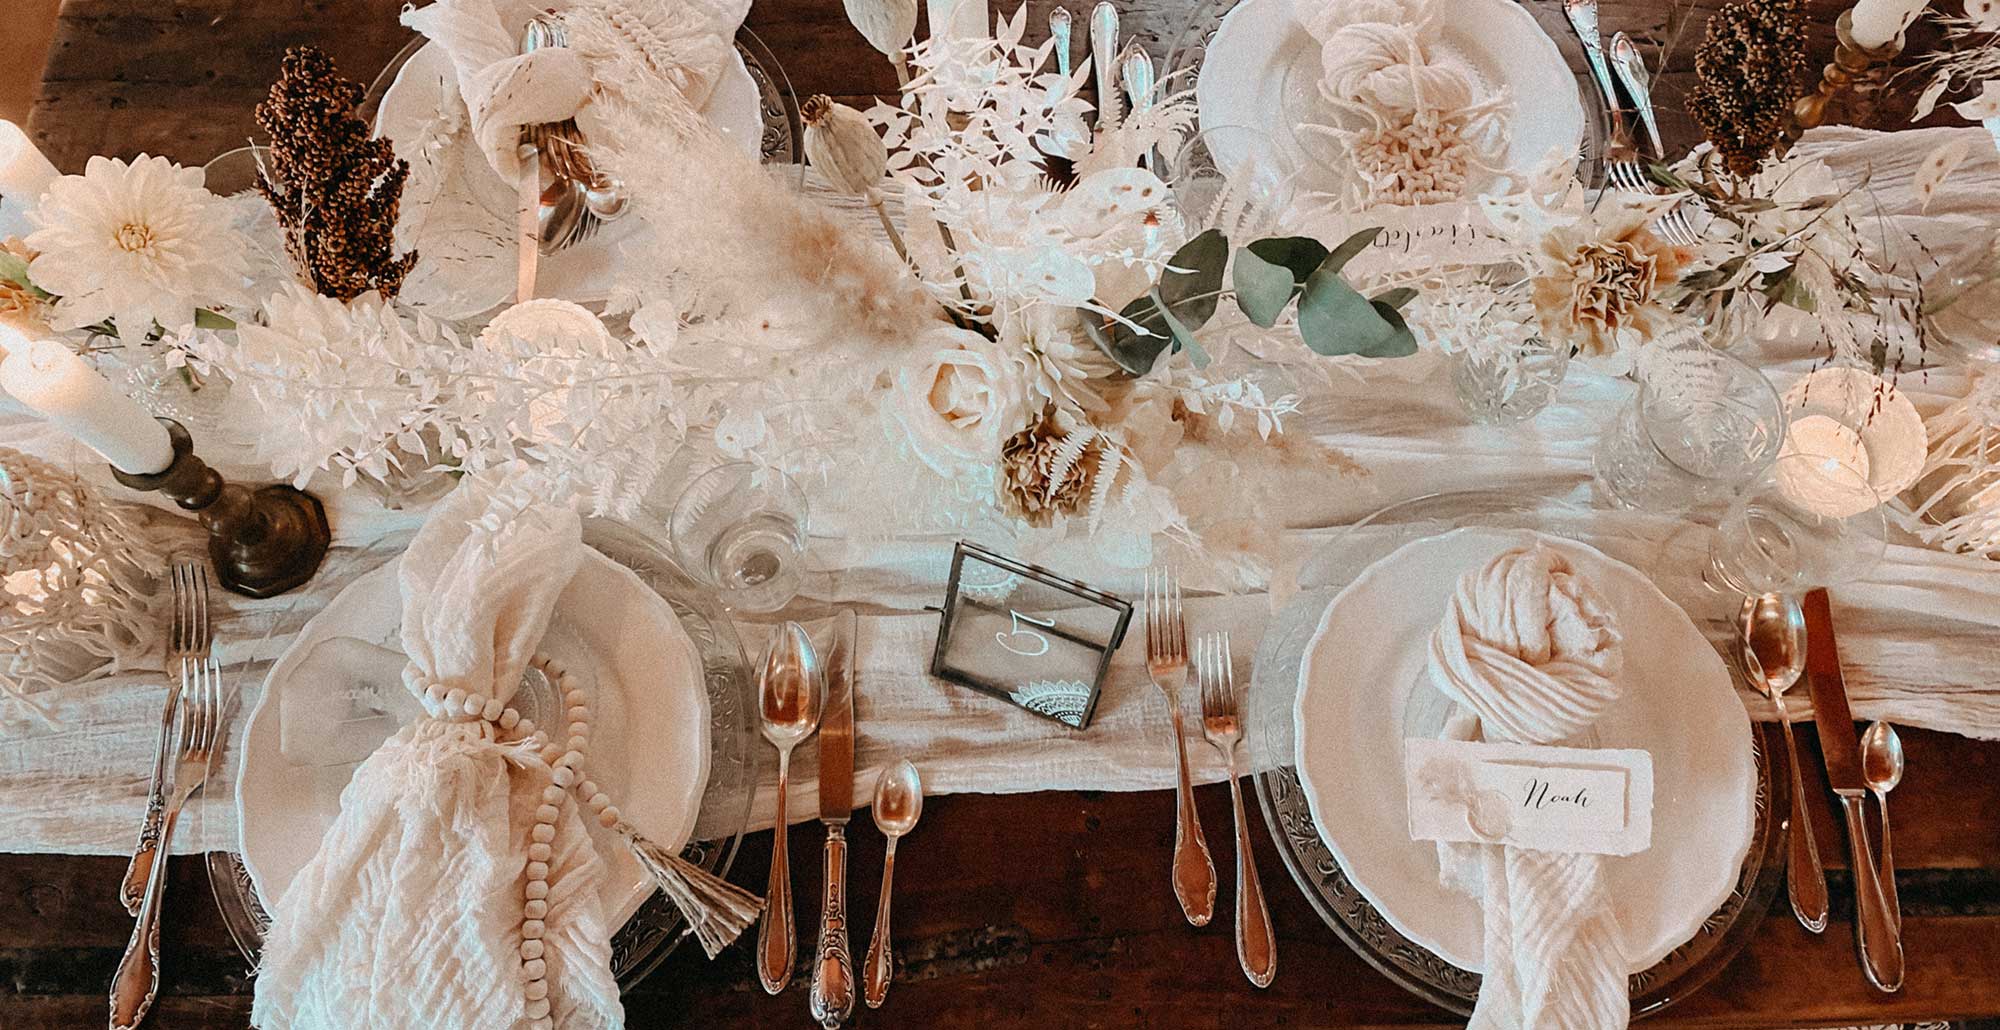 Eine Hochzeitstafel im Bohostyle, gedeckt mit Tellern, Servietten und verschiedenen Dekoelementen